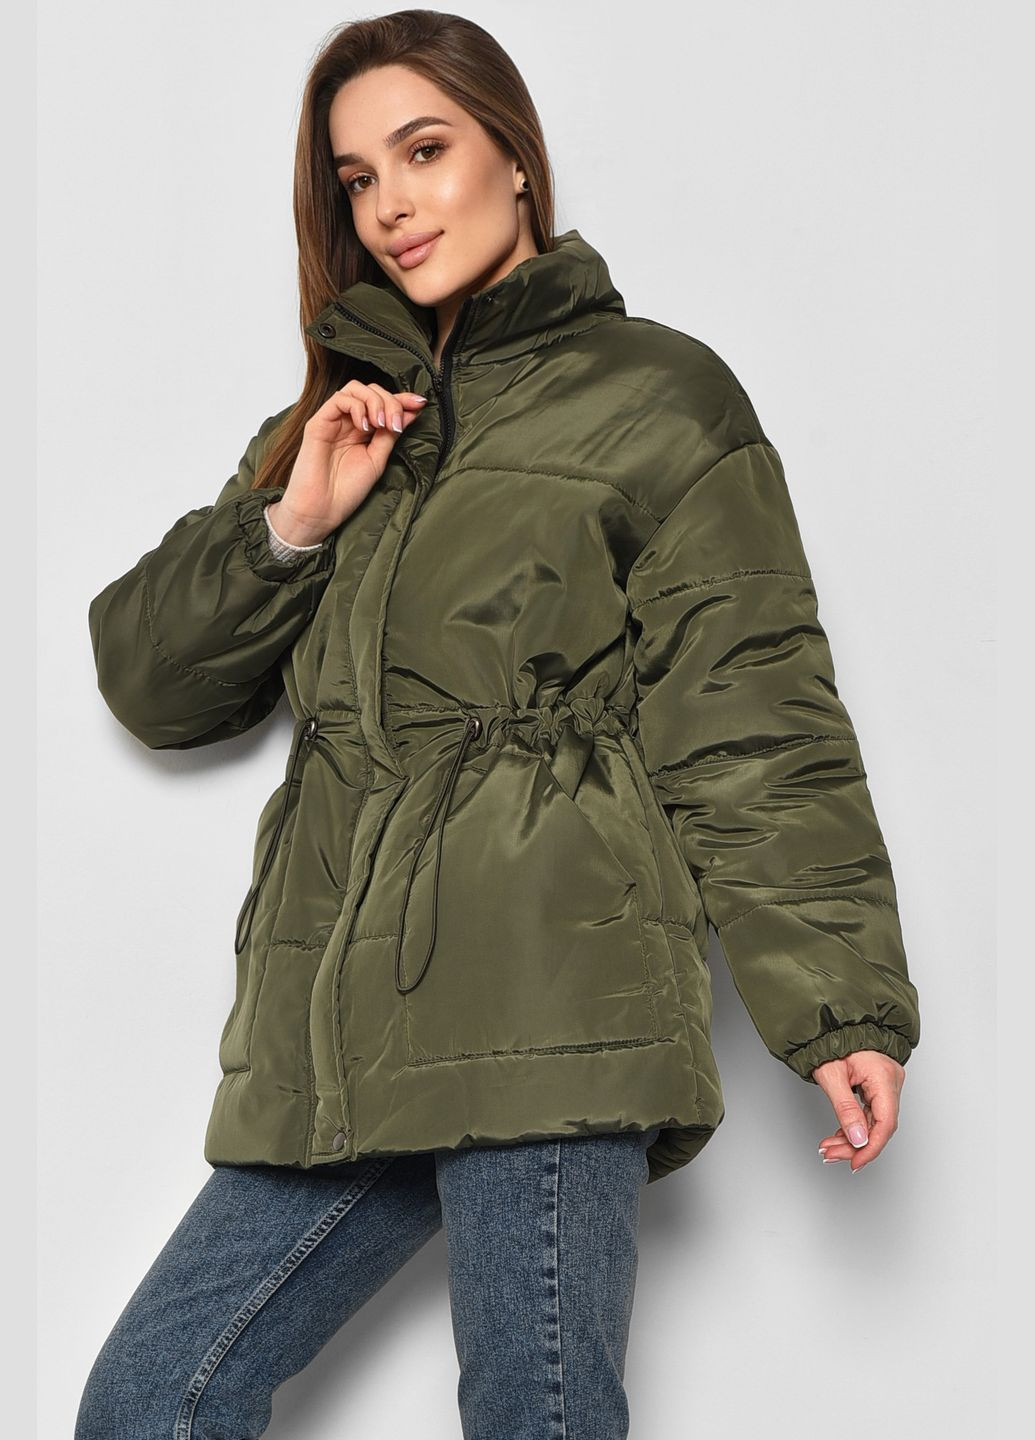 Оливковая (хаки) демисезонная куртка женская демисезонная цвета хаки Let's Shop